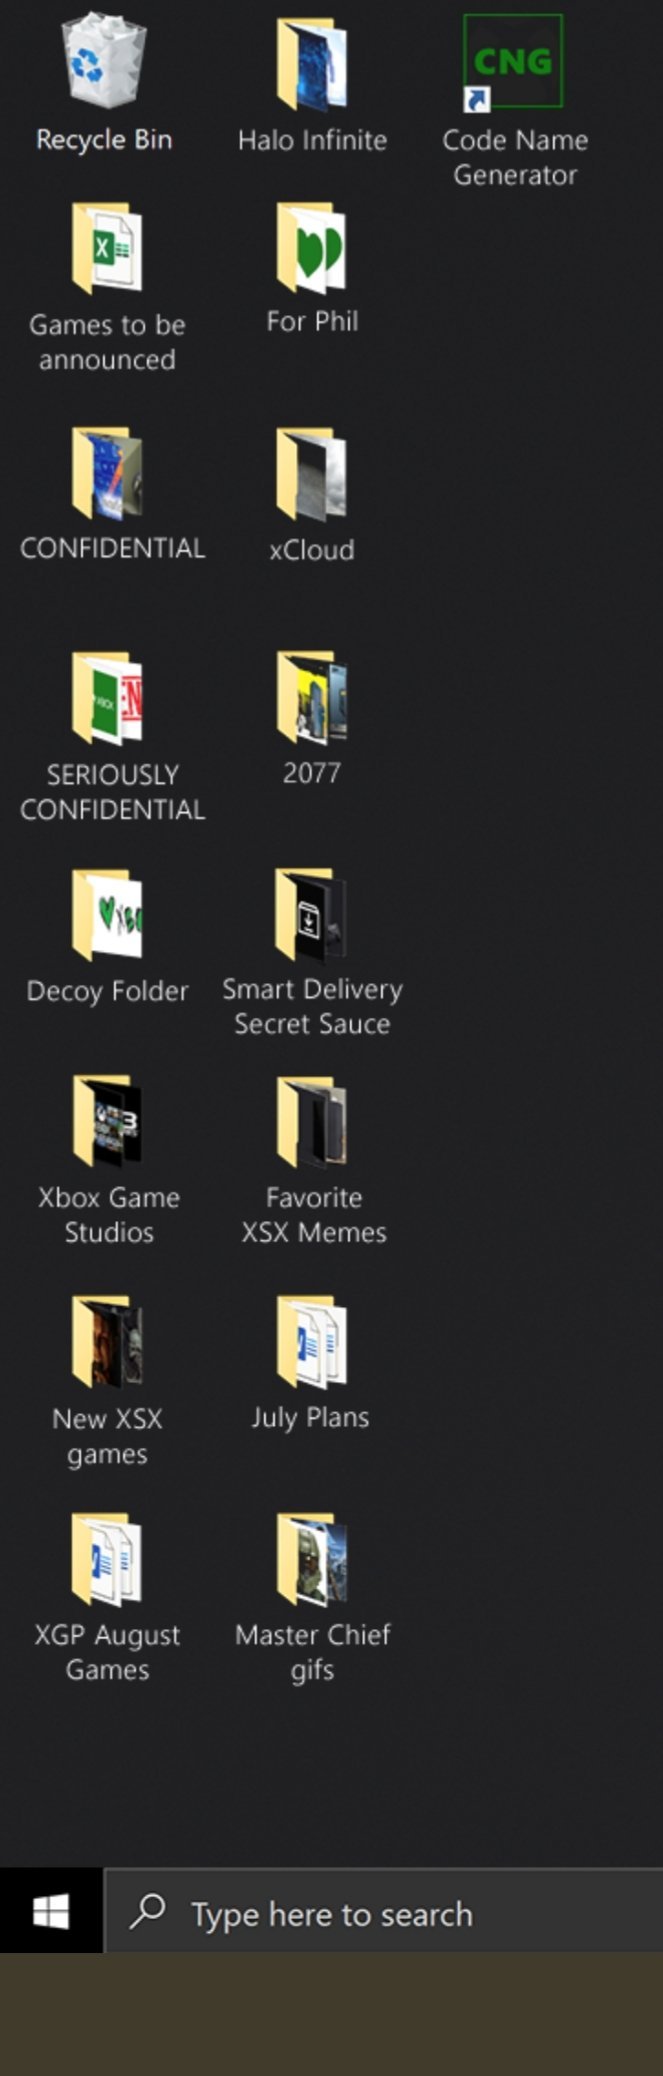 微软推出免费Win10的Xbox Series X主题 很多彩蛋